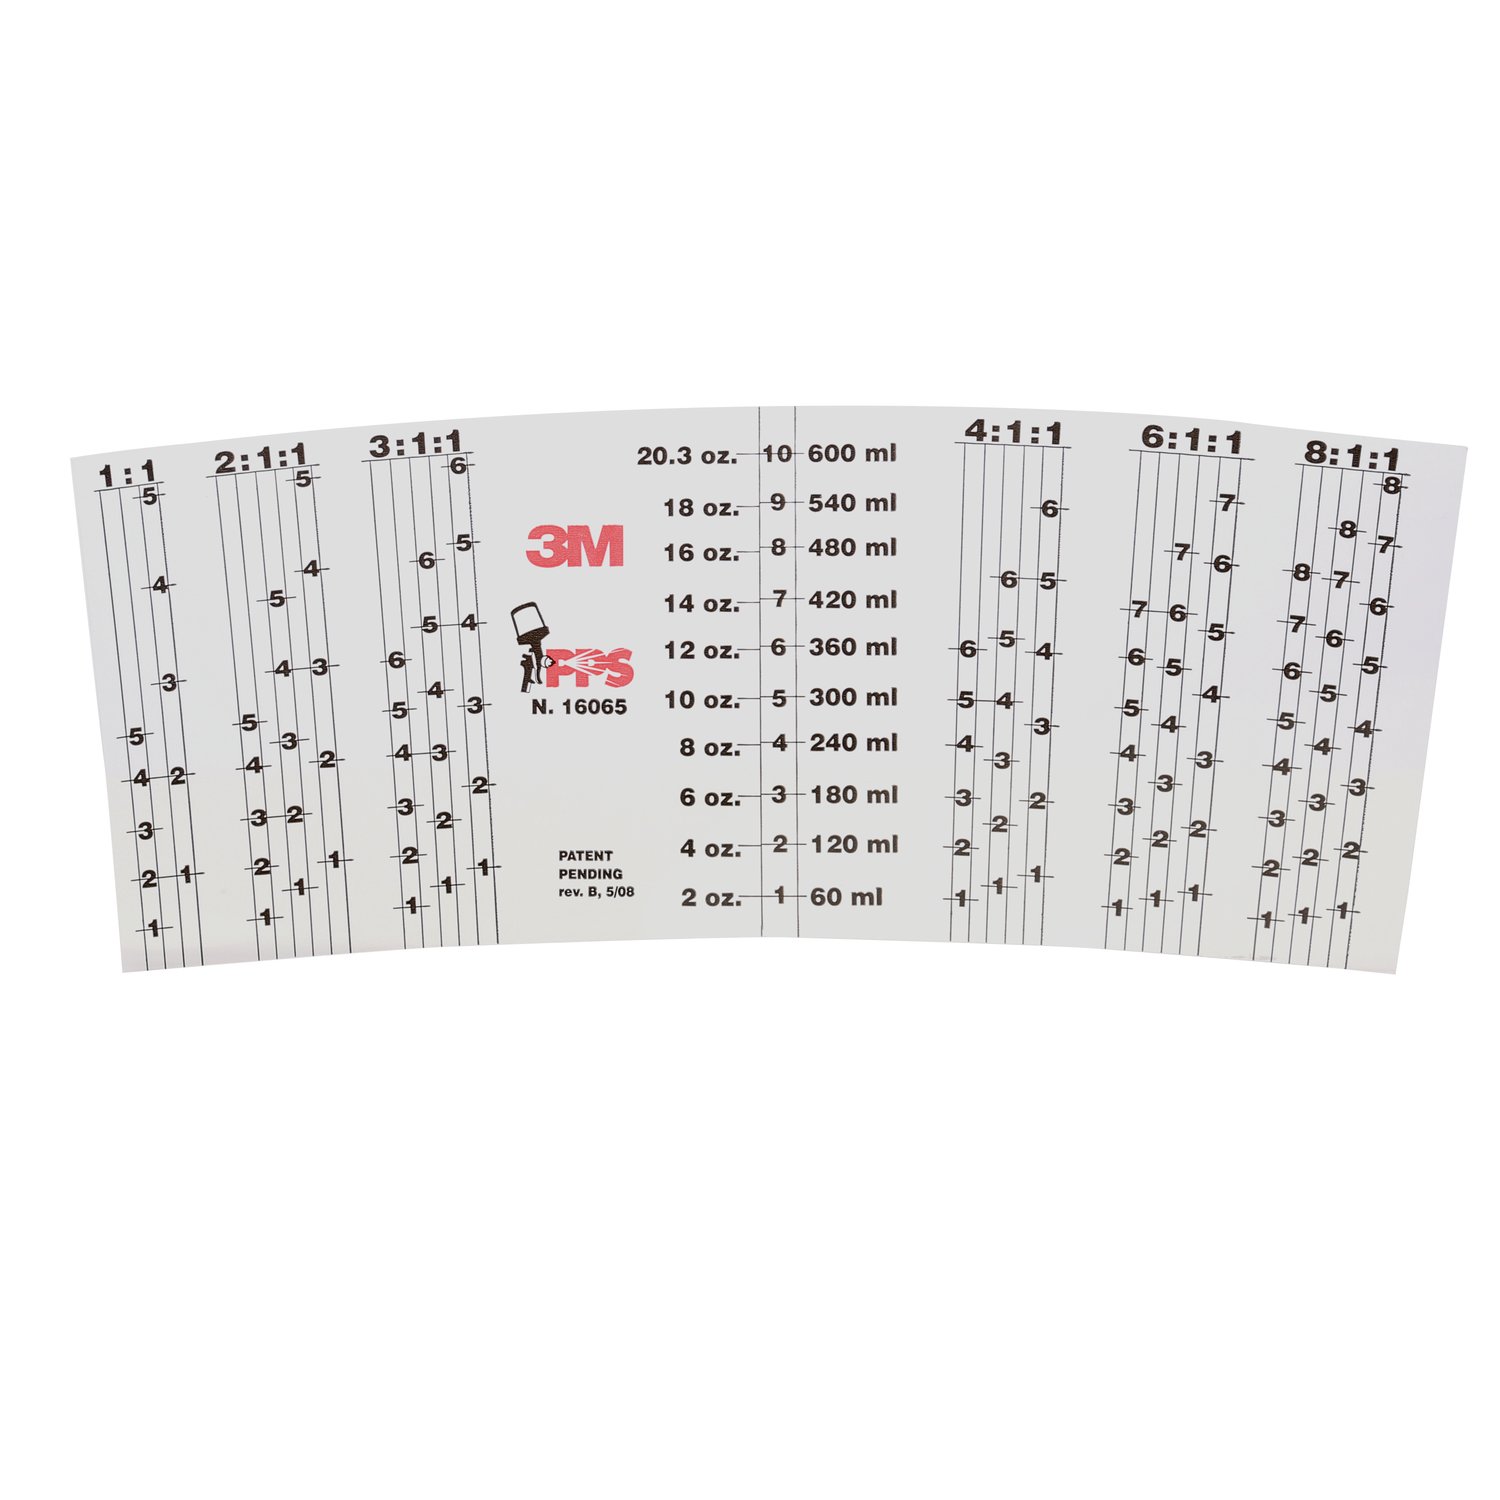 7000120485 - 3M PPS Mix Ratio Inserts, 16065, Standard (22 fl oz), 10 per pack, 10
packs per case